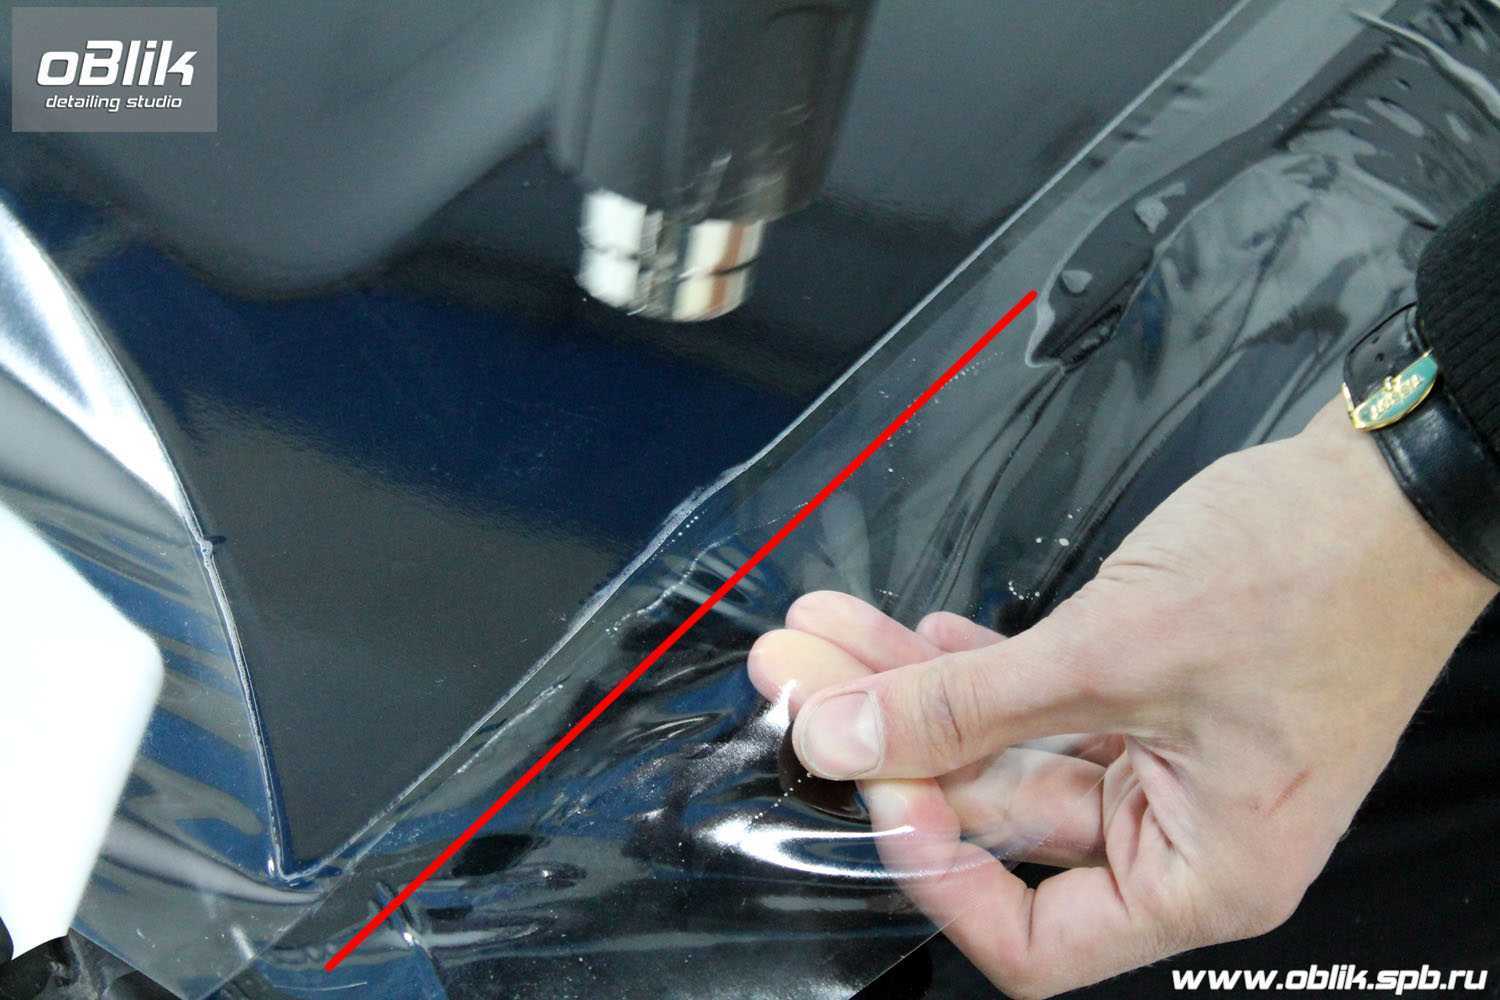 Чтобы снять с автомобиля защитную виниловую или полиуретановую пленку, не повредив лакокрасочного покрытия машины, можно прибегнуть к термическому воздействию